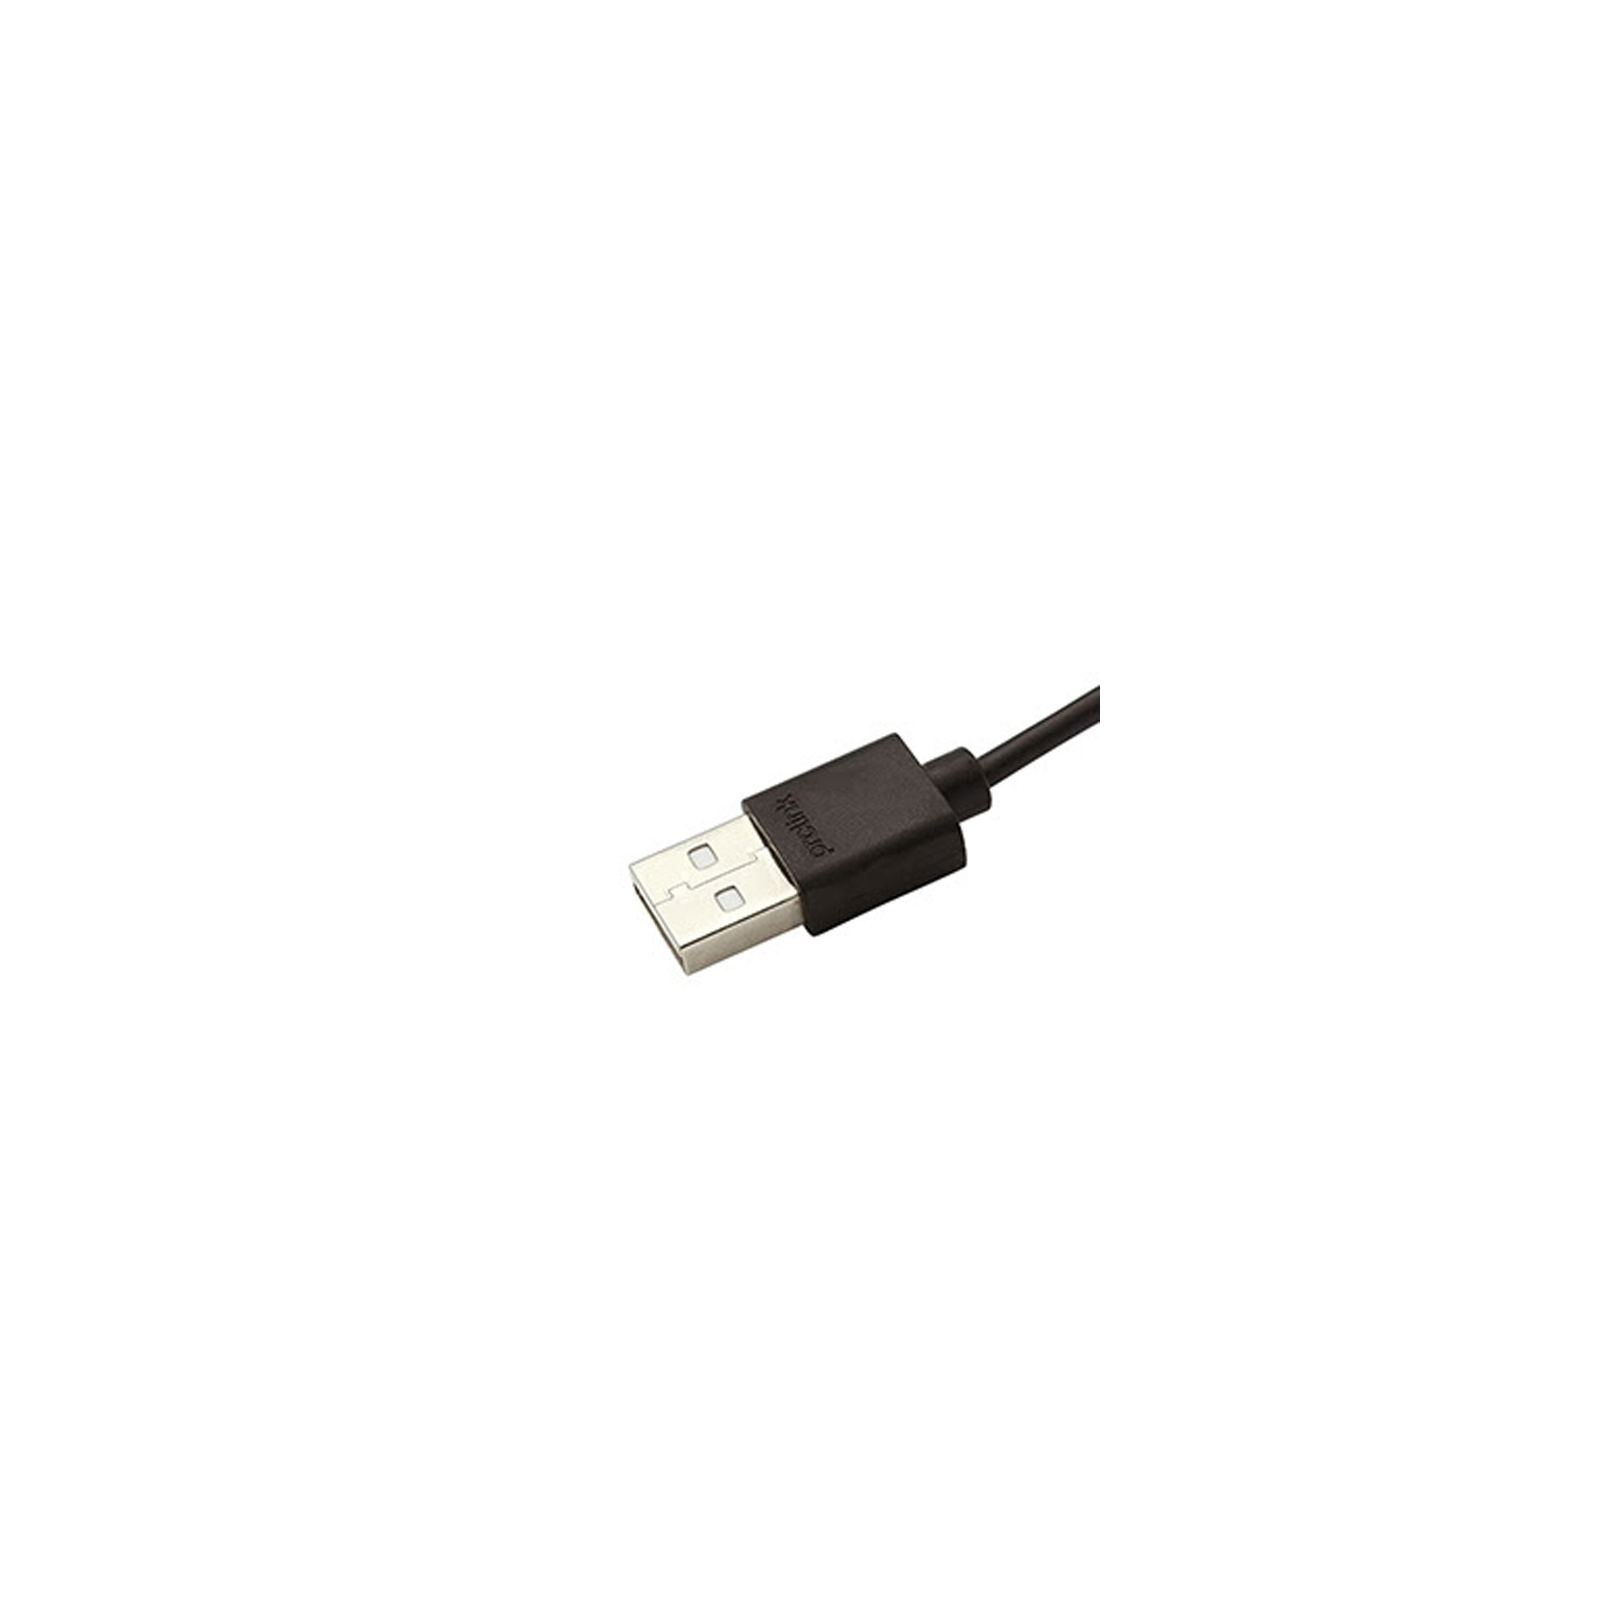 Дата кабель USB 2.0 AM to Type-C 1.0m Prolink (PL495-0100) зображення 3